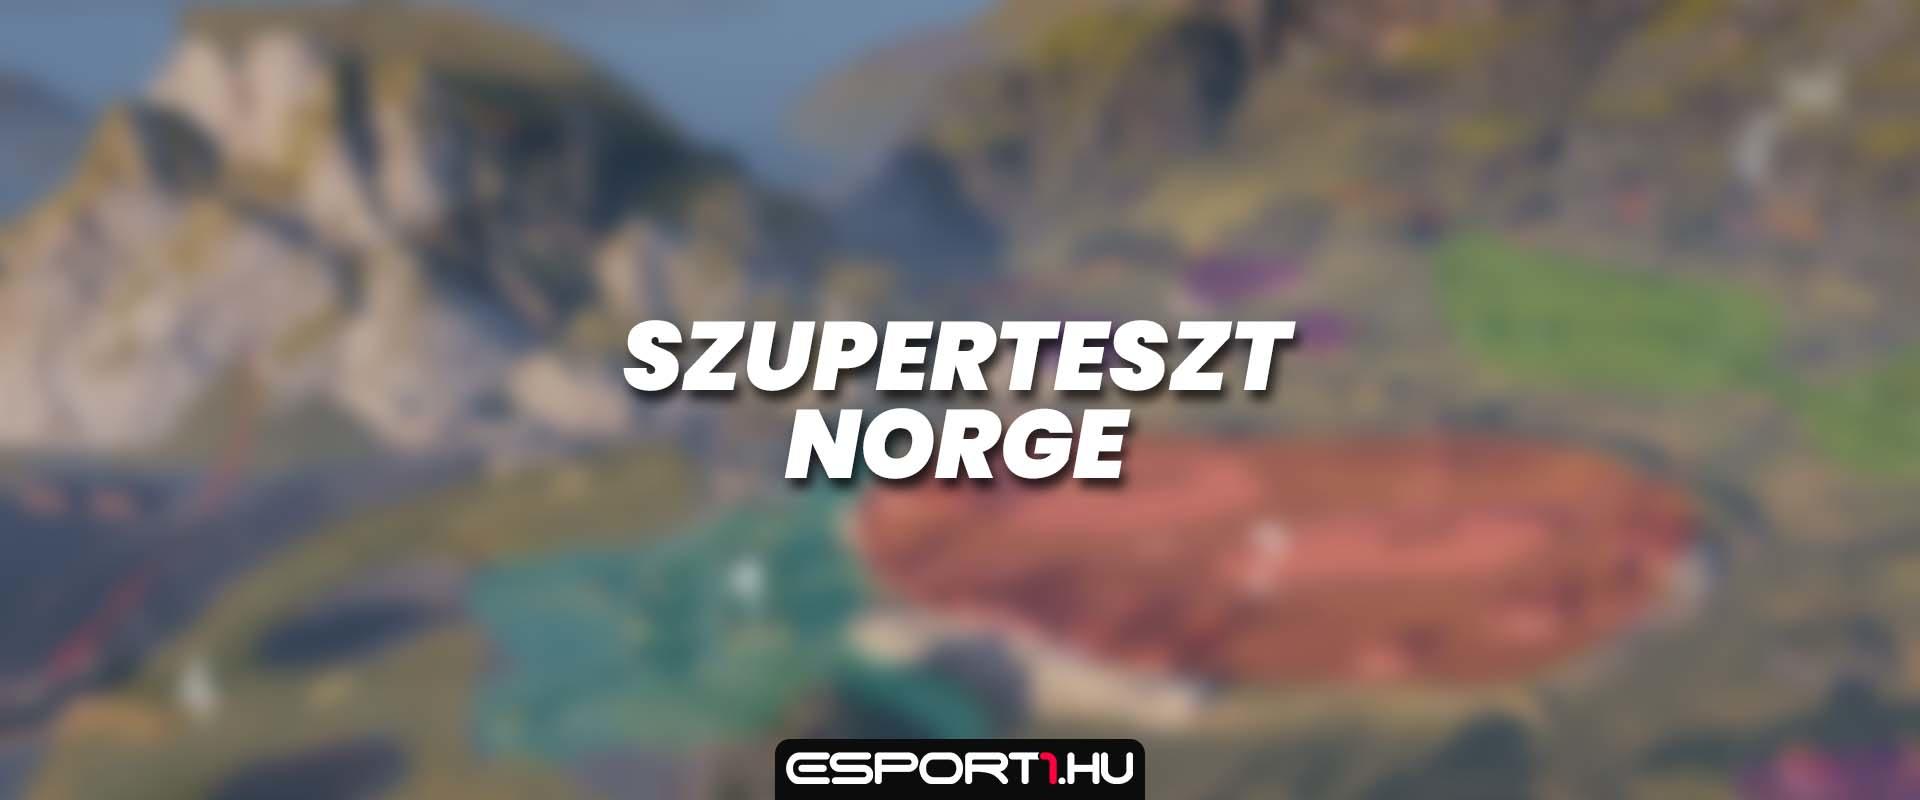 Norge pálya bemutató - Egyelőre csak a szuperteszten!